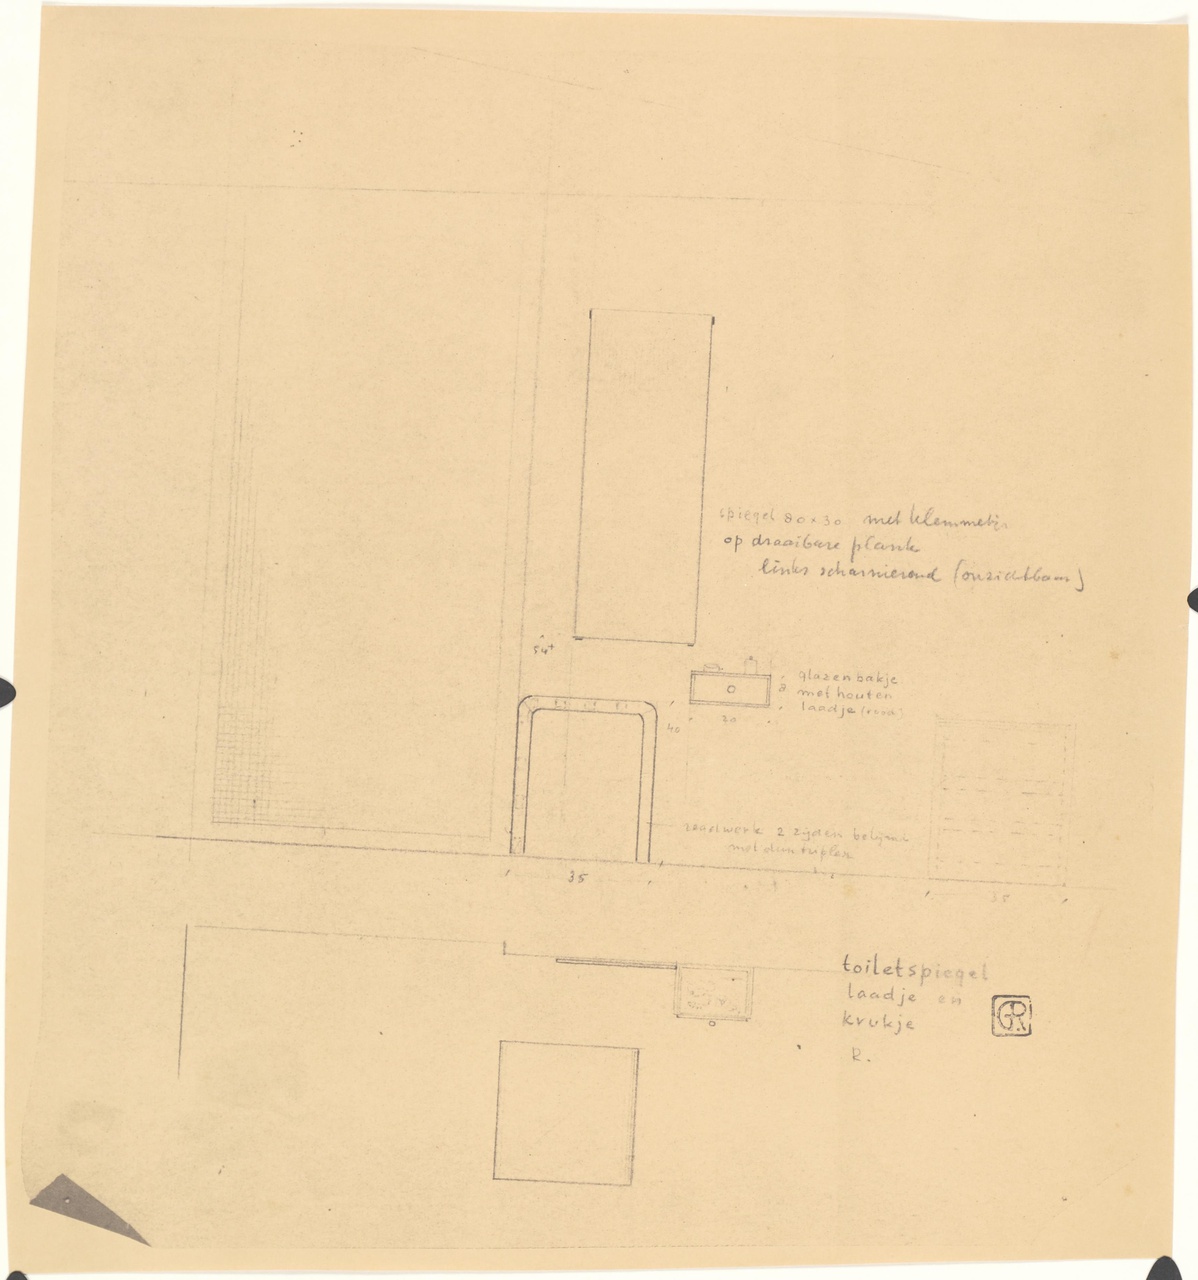 Woonslaapkamer 'de nieuwe woning' , Metz & Co, 's-Gravenhage (toiletspiegel met laatje, compositie van spiegel, ladekastje en krukje)